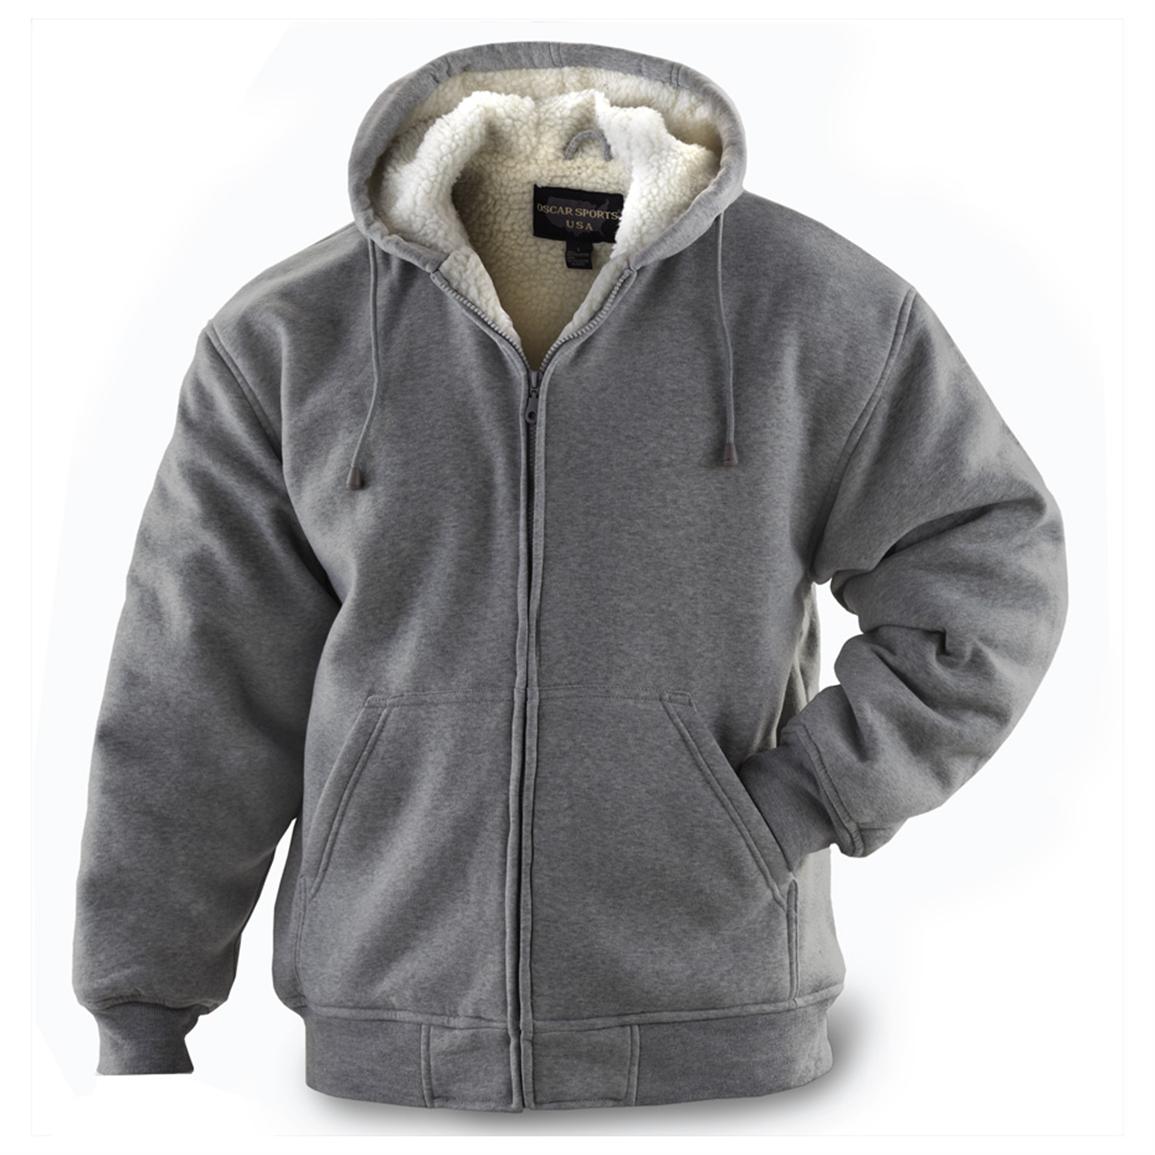 Maxsell® Hooded Fleece Jacket - 207553, Sweatshirts & Hoodies at ...